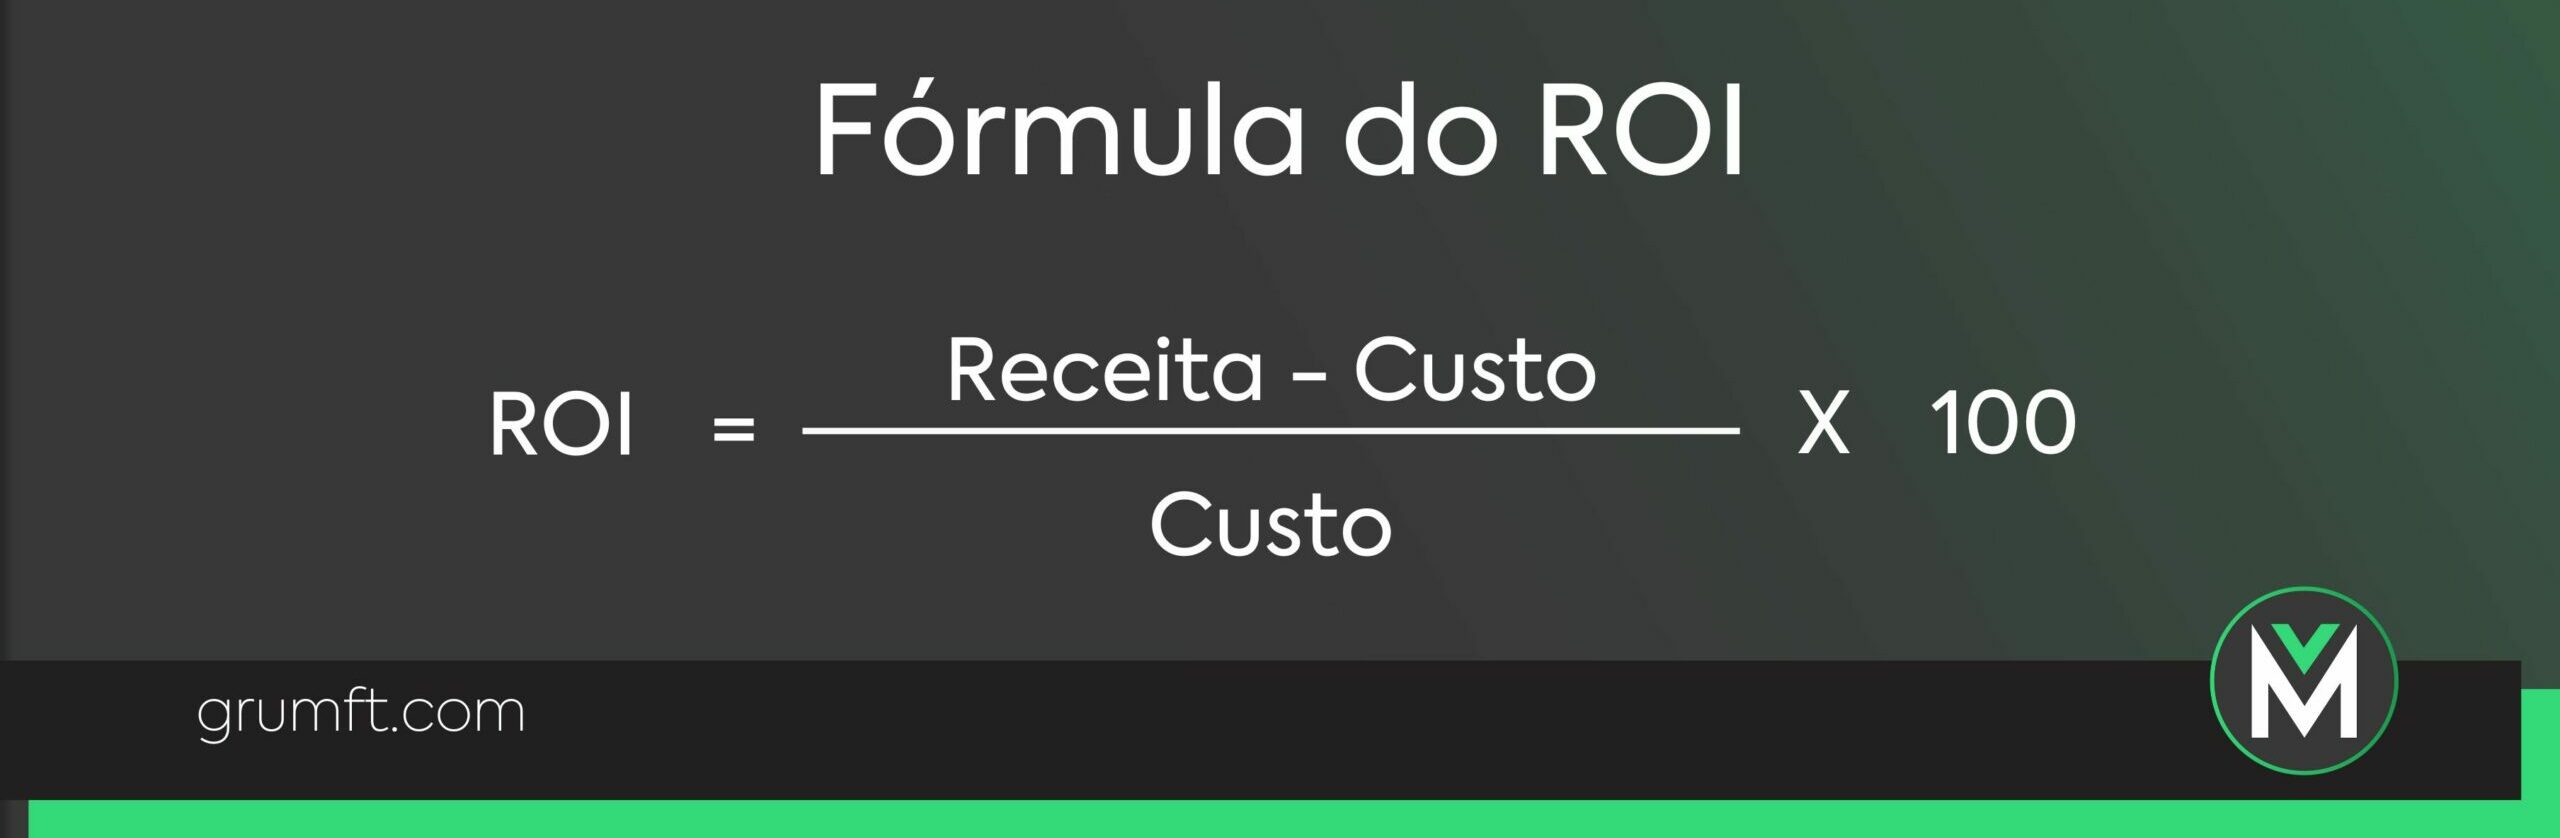 Fórmula do ROI